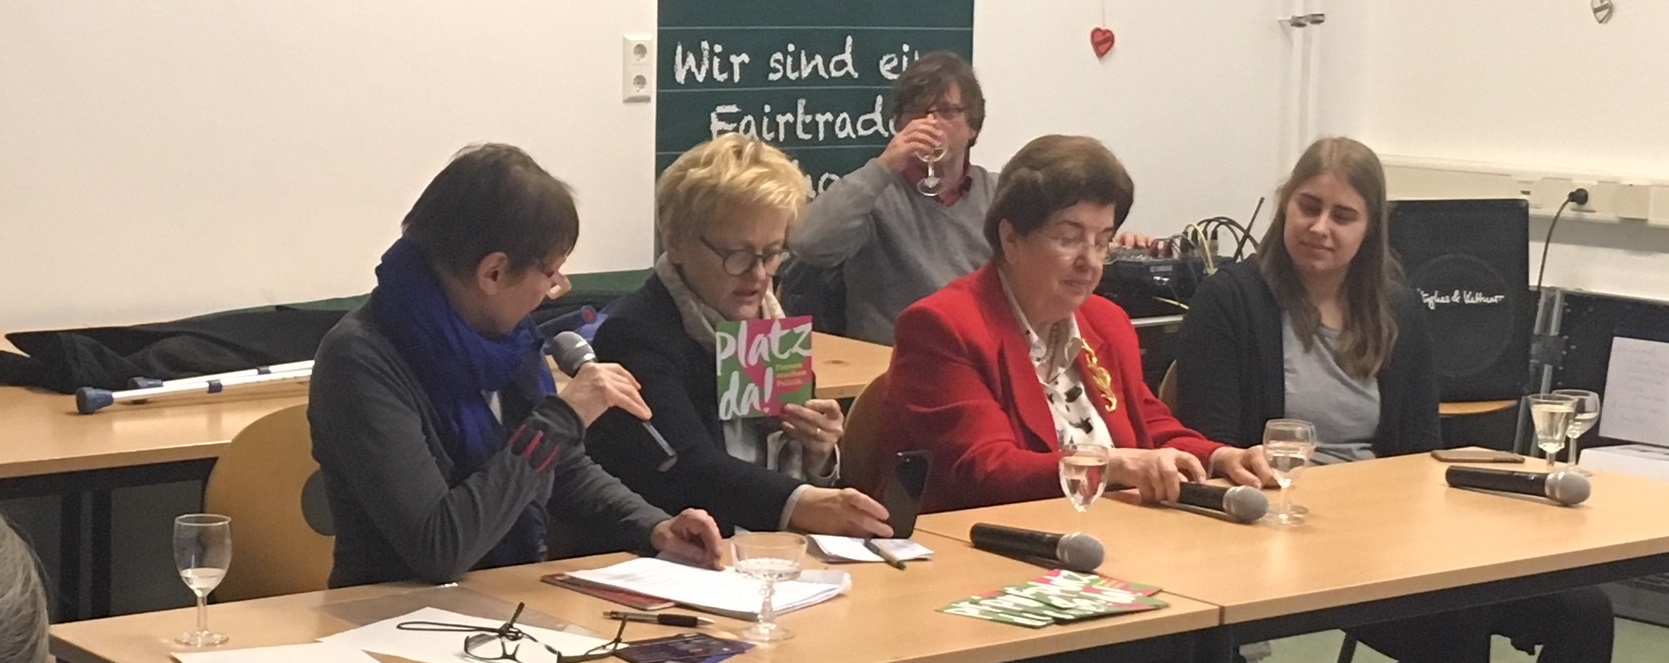 Lore-Maria Peschel-Gutzeit (85), Renate Künast (62) und June Tomiak (21) im Gespräch